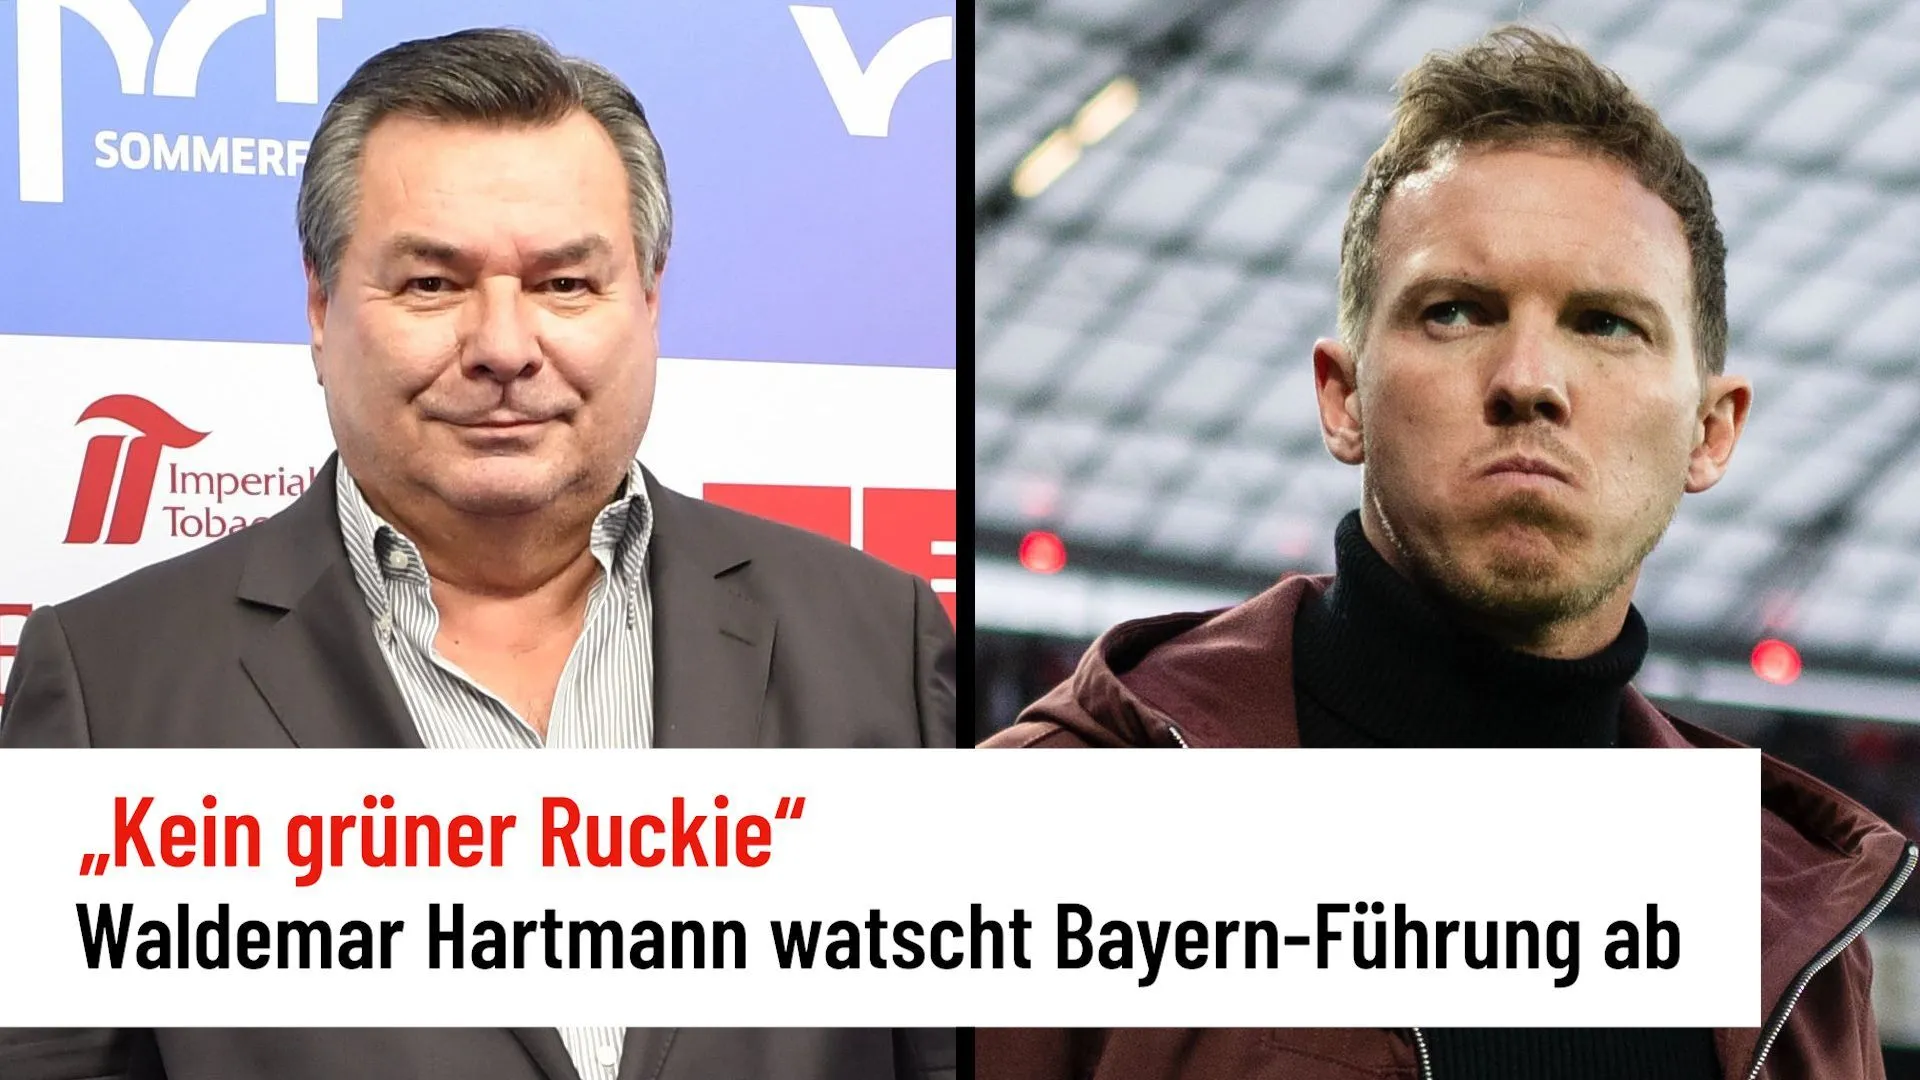 Waldemar Hartmann watscht Führung des FC Bayern München ab – Nagelsmann „kein grüner Ruckie“